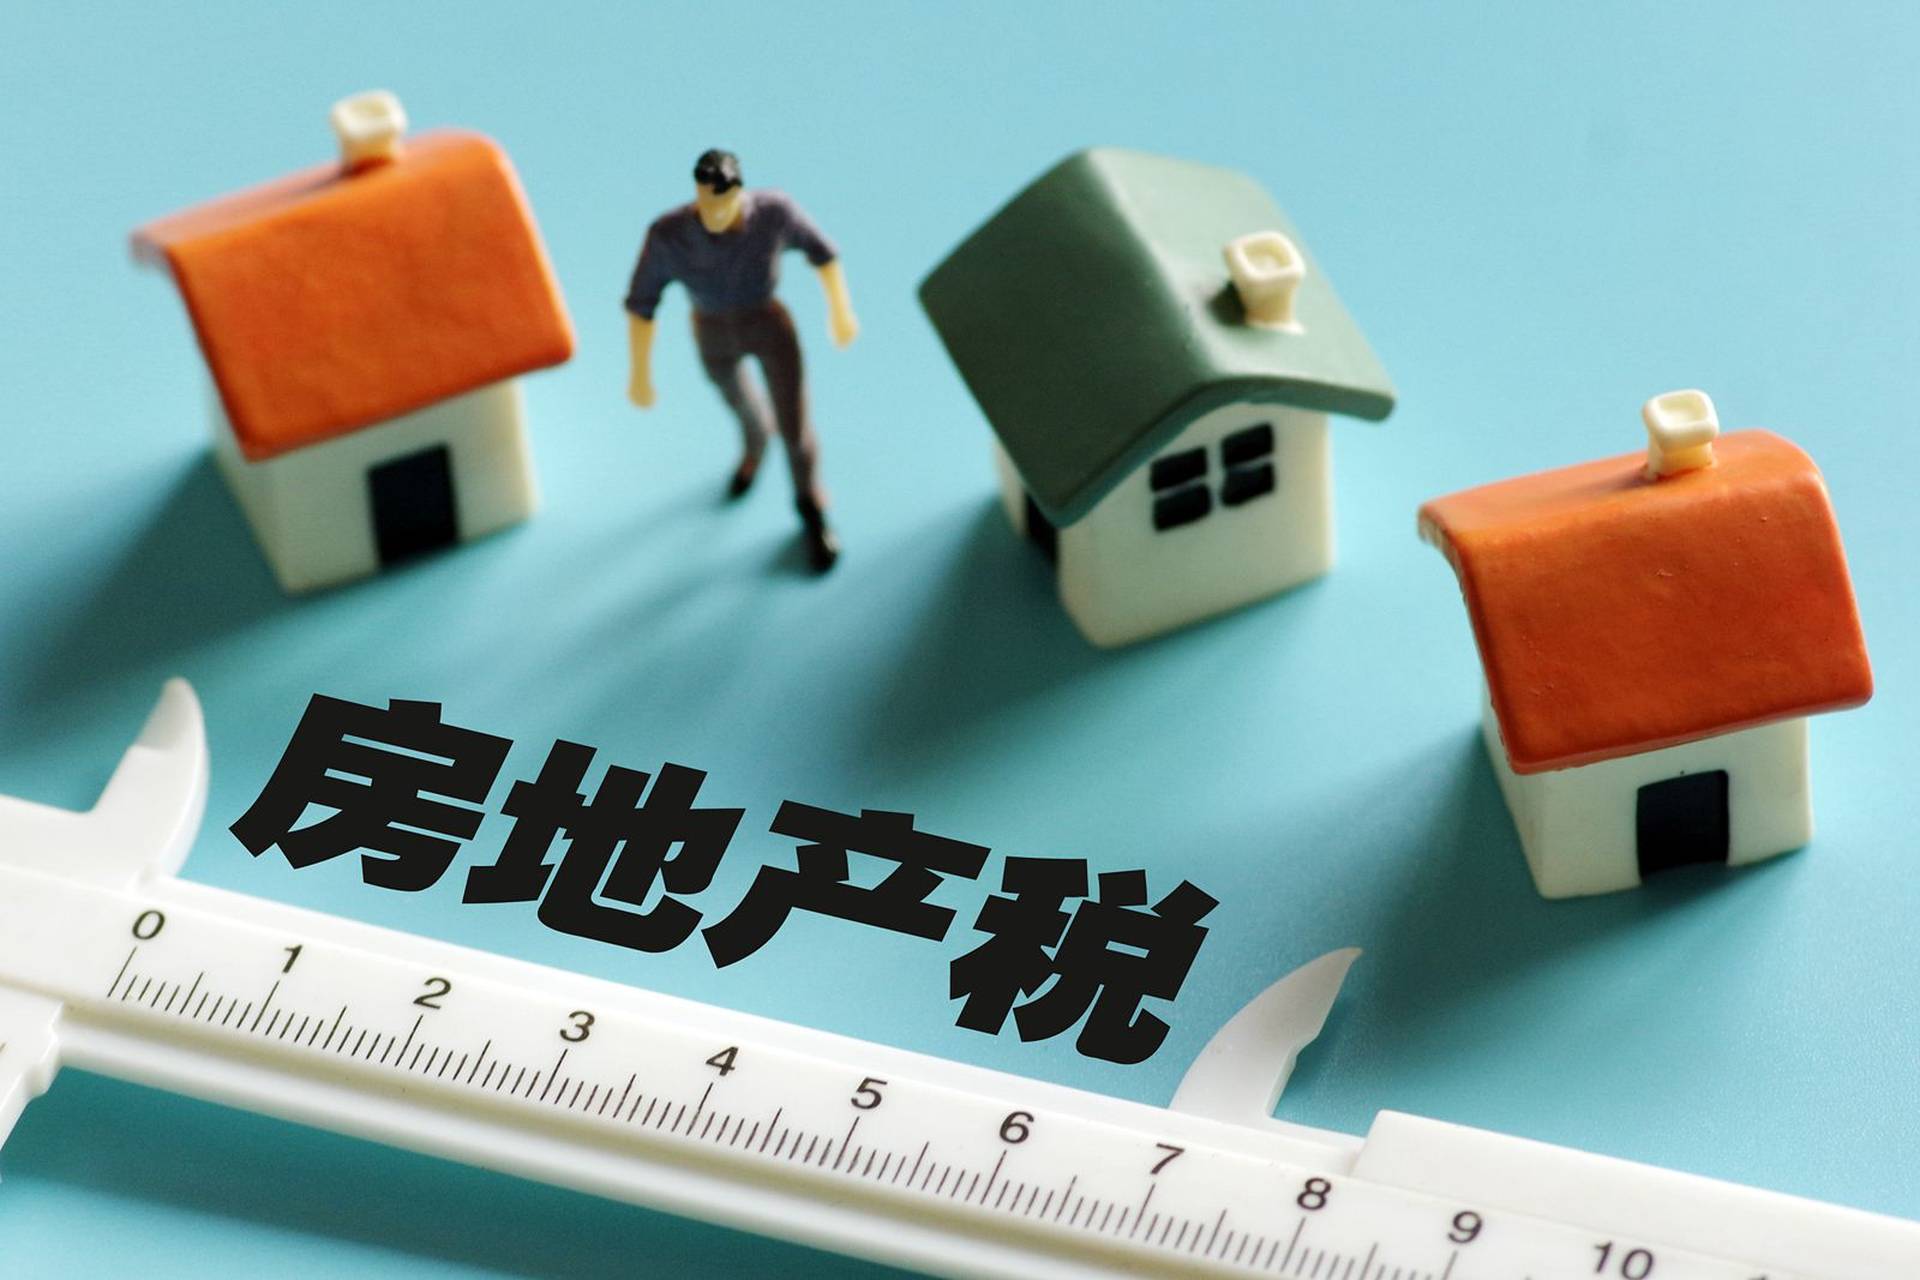 中國確定房地產稅試點城市會考慮哪些因素